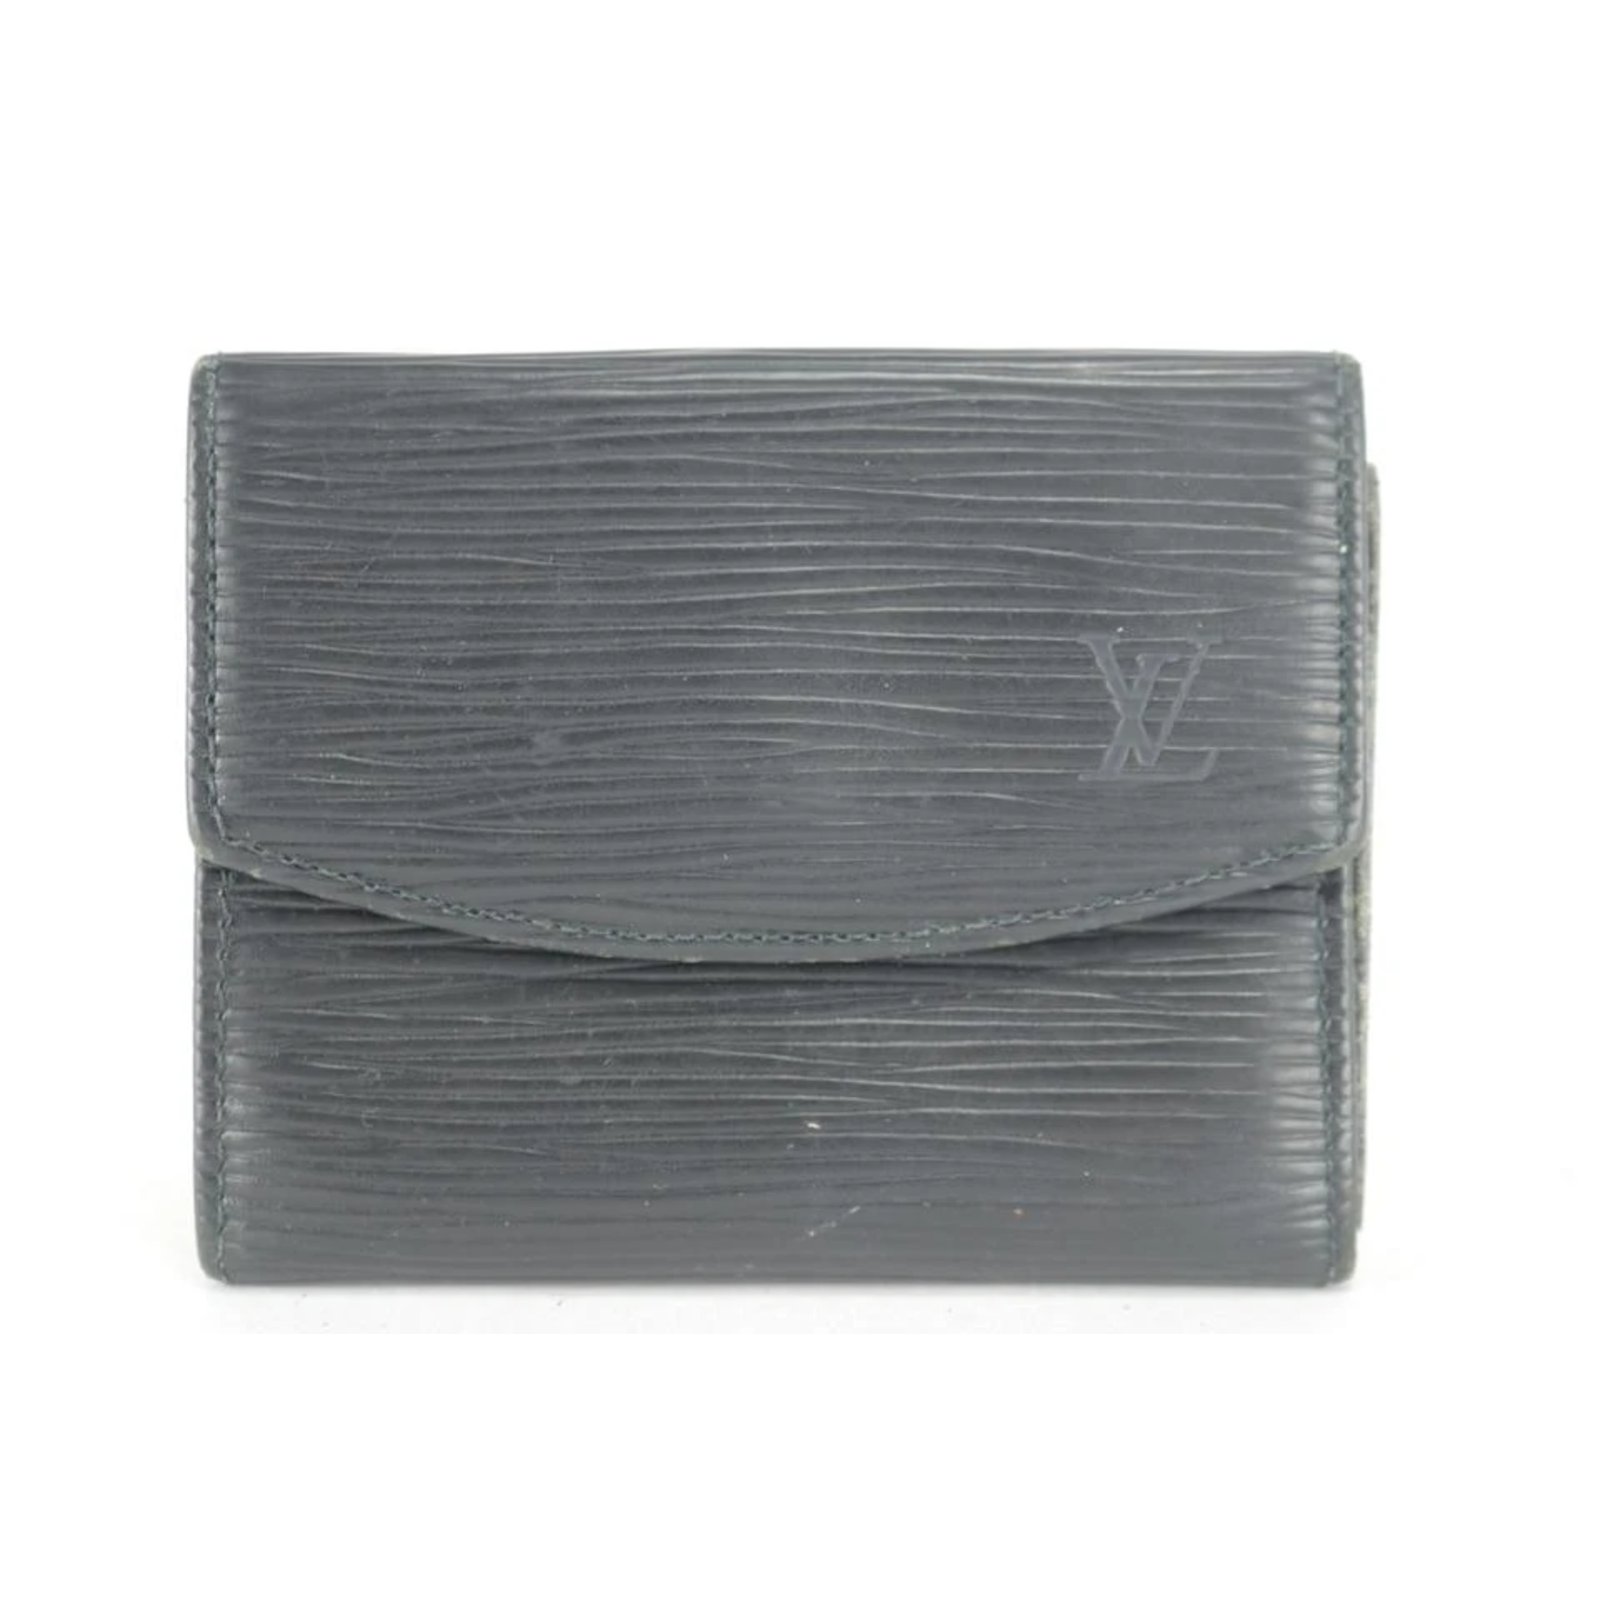 Louis Vuitton Epi Envelope Business Card Holder - Black Wallets,  Accessories - LOU329300